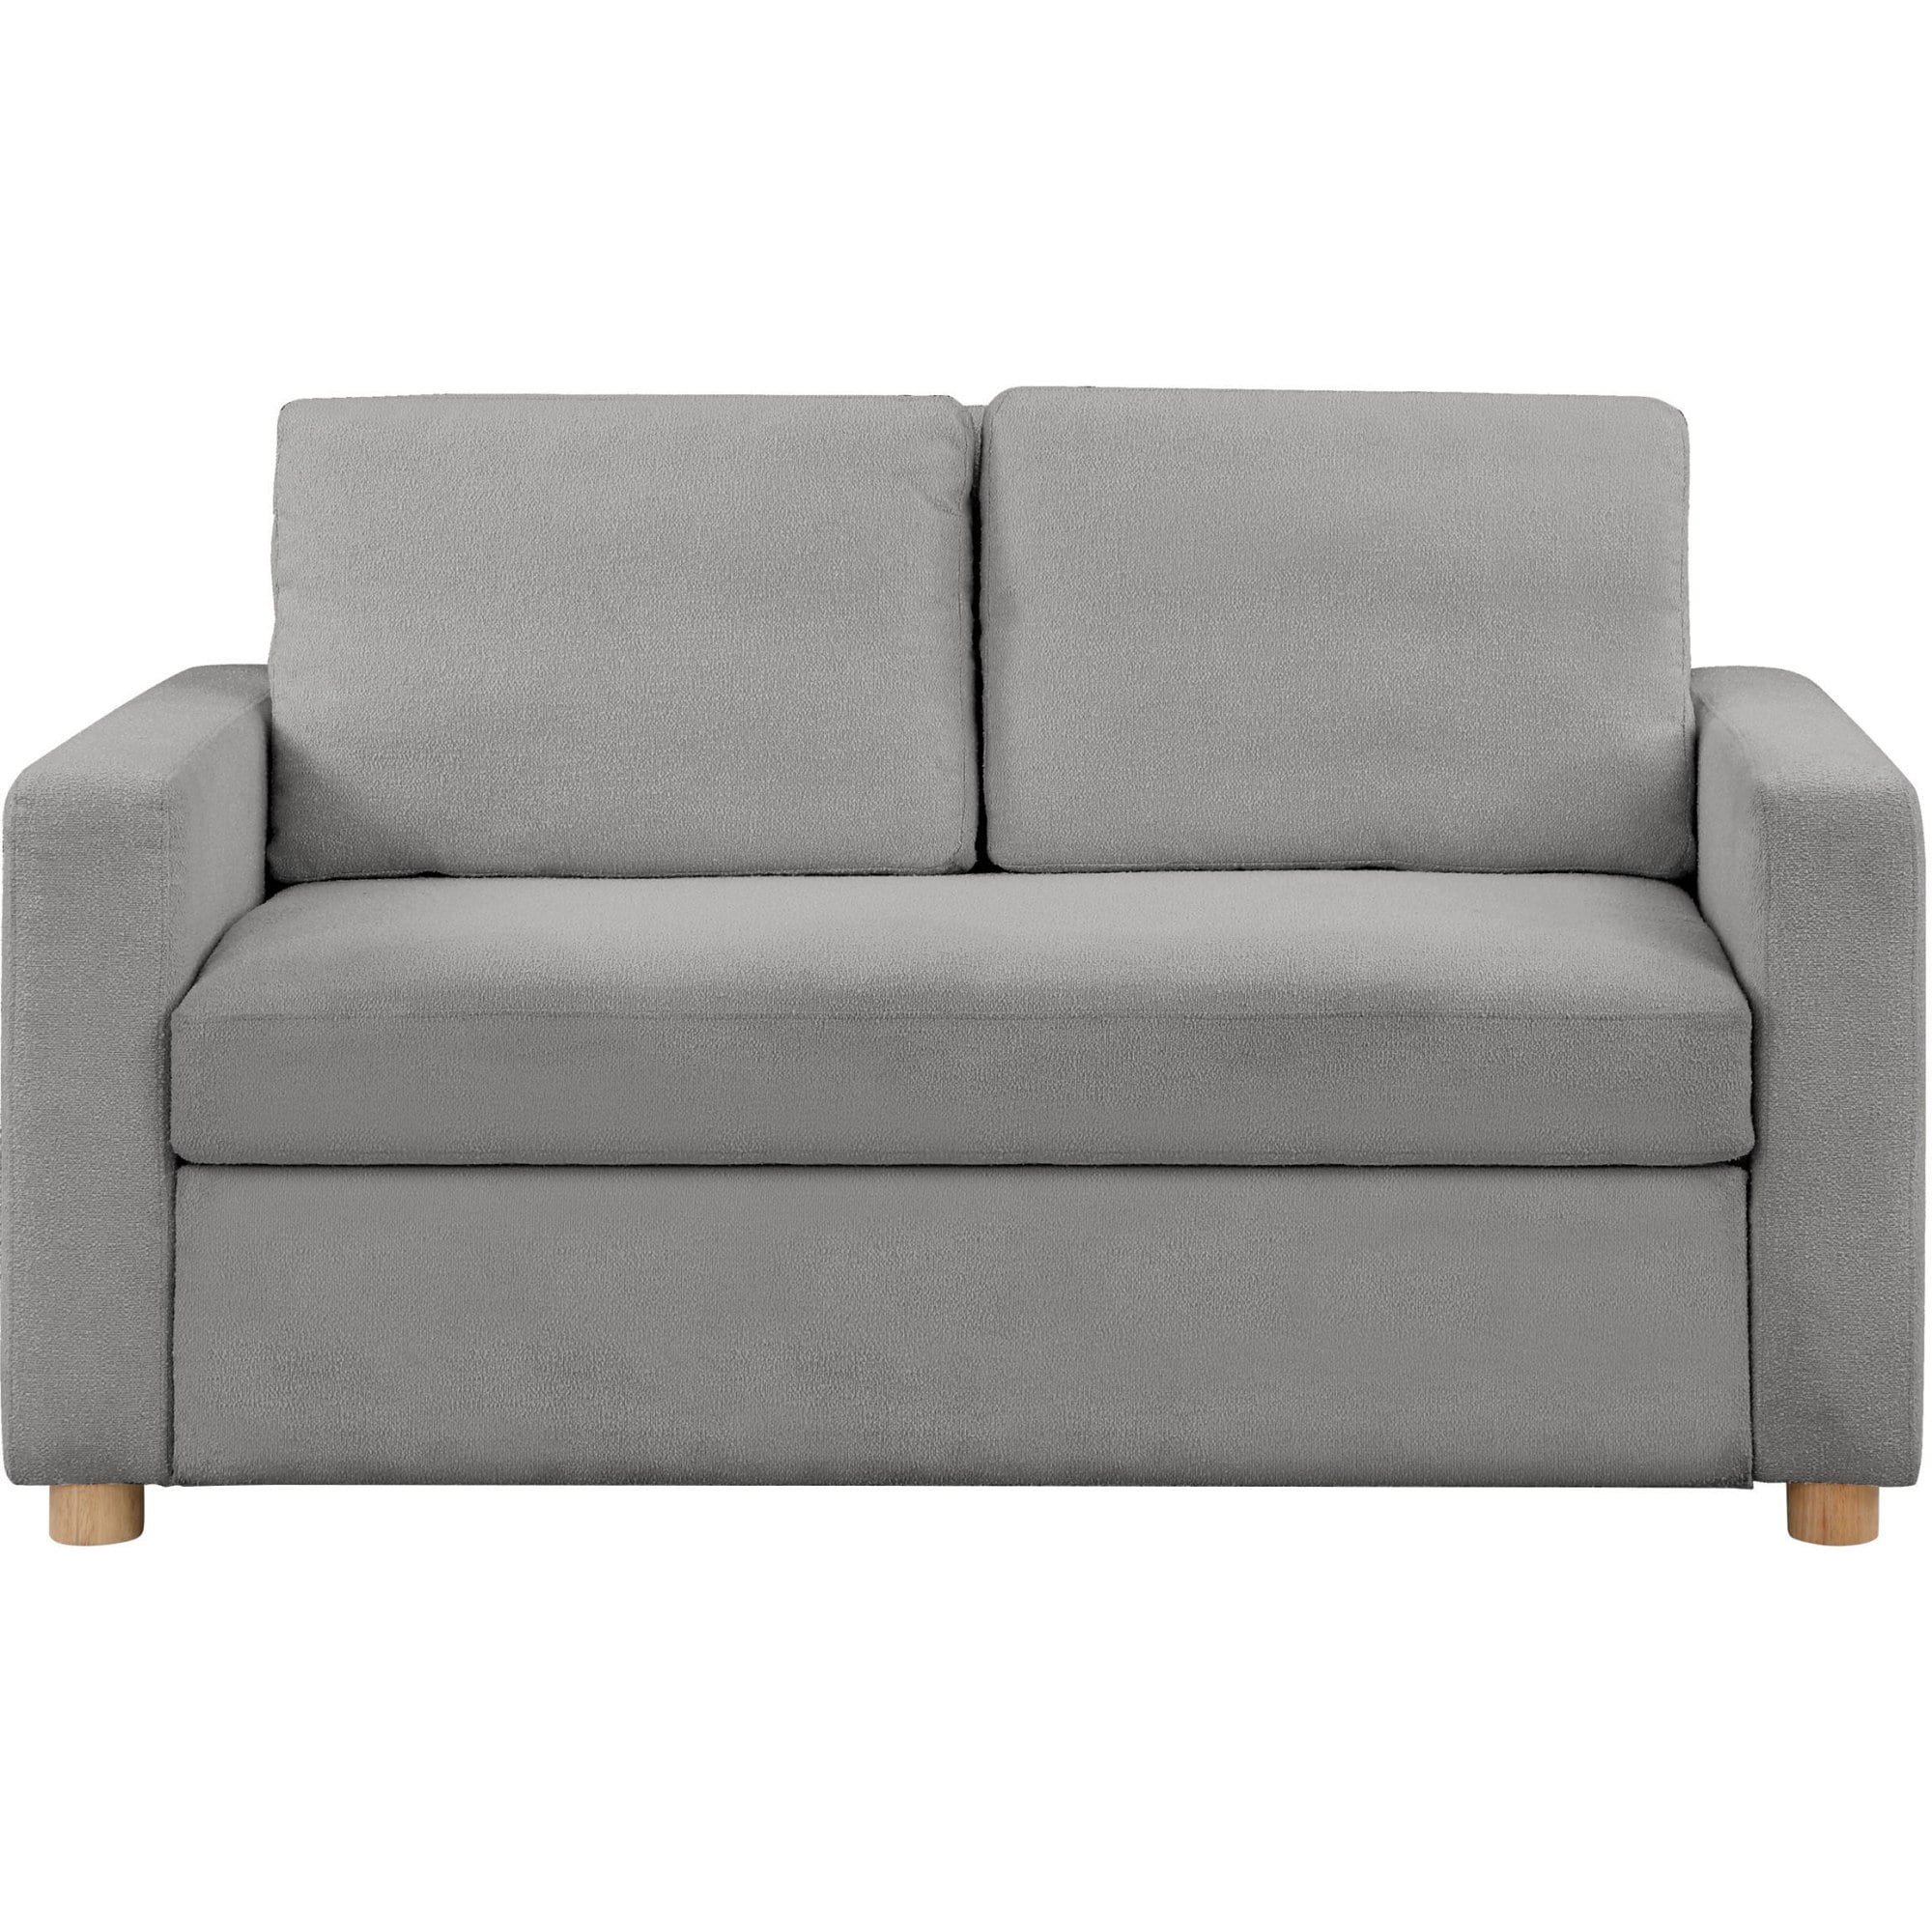 Serta Tacoma Convertible Sofa In Gray